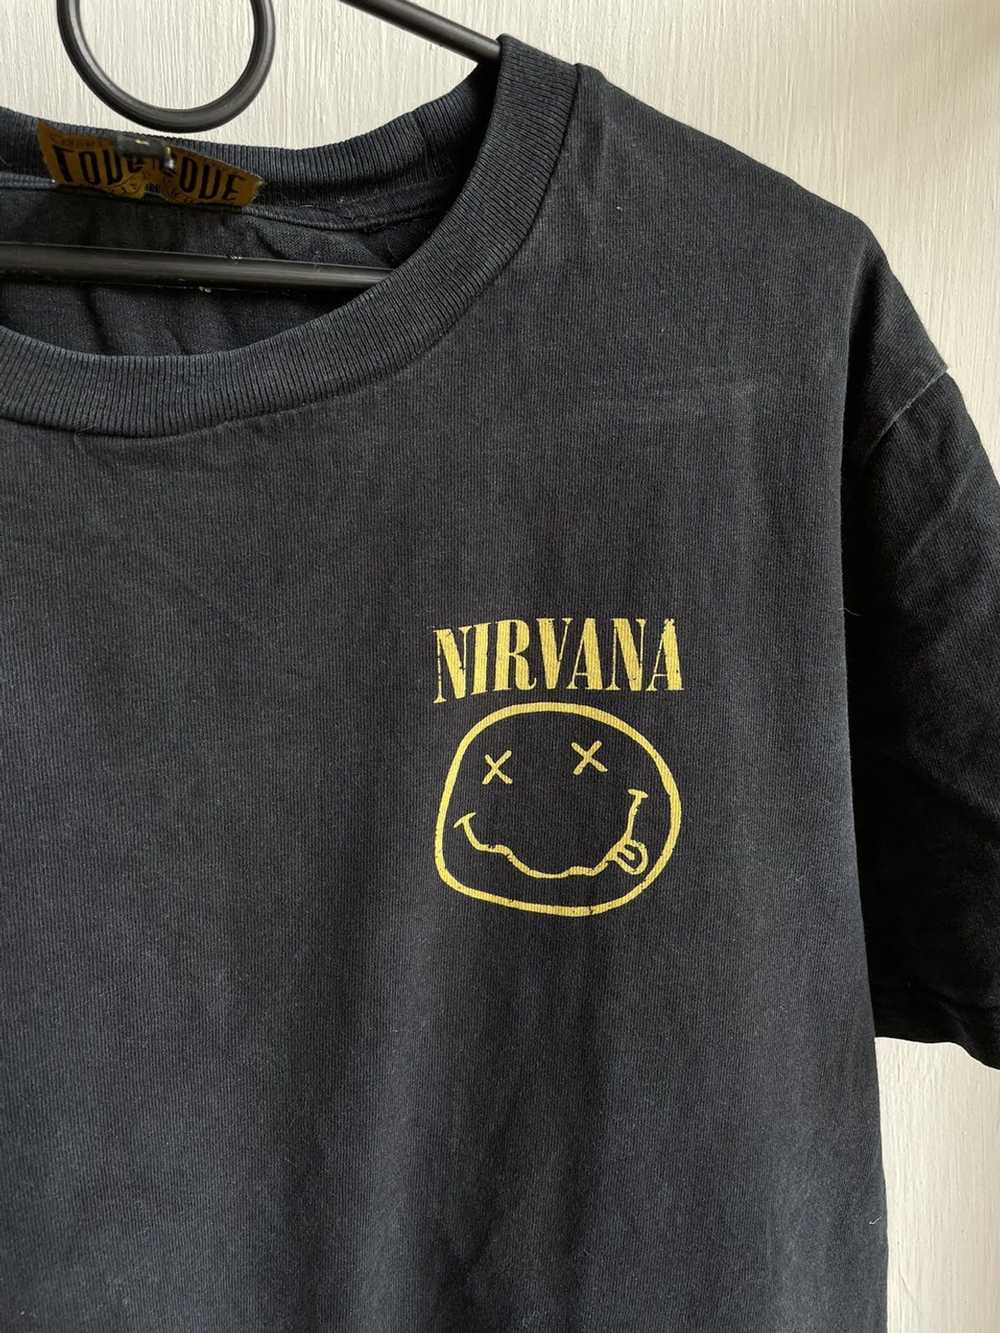 Band Tees × Nirvana × Rock Tees Nirvana Smile T-S… - image 3